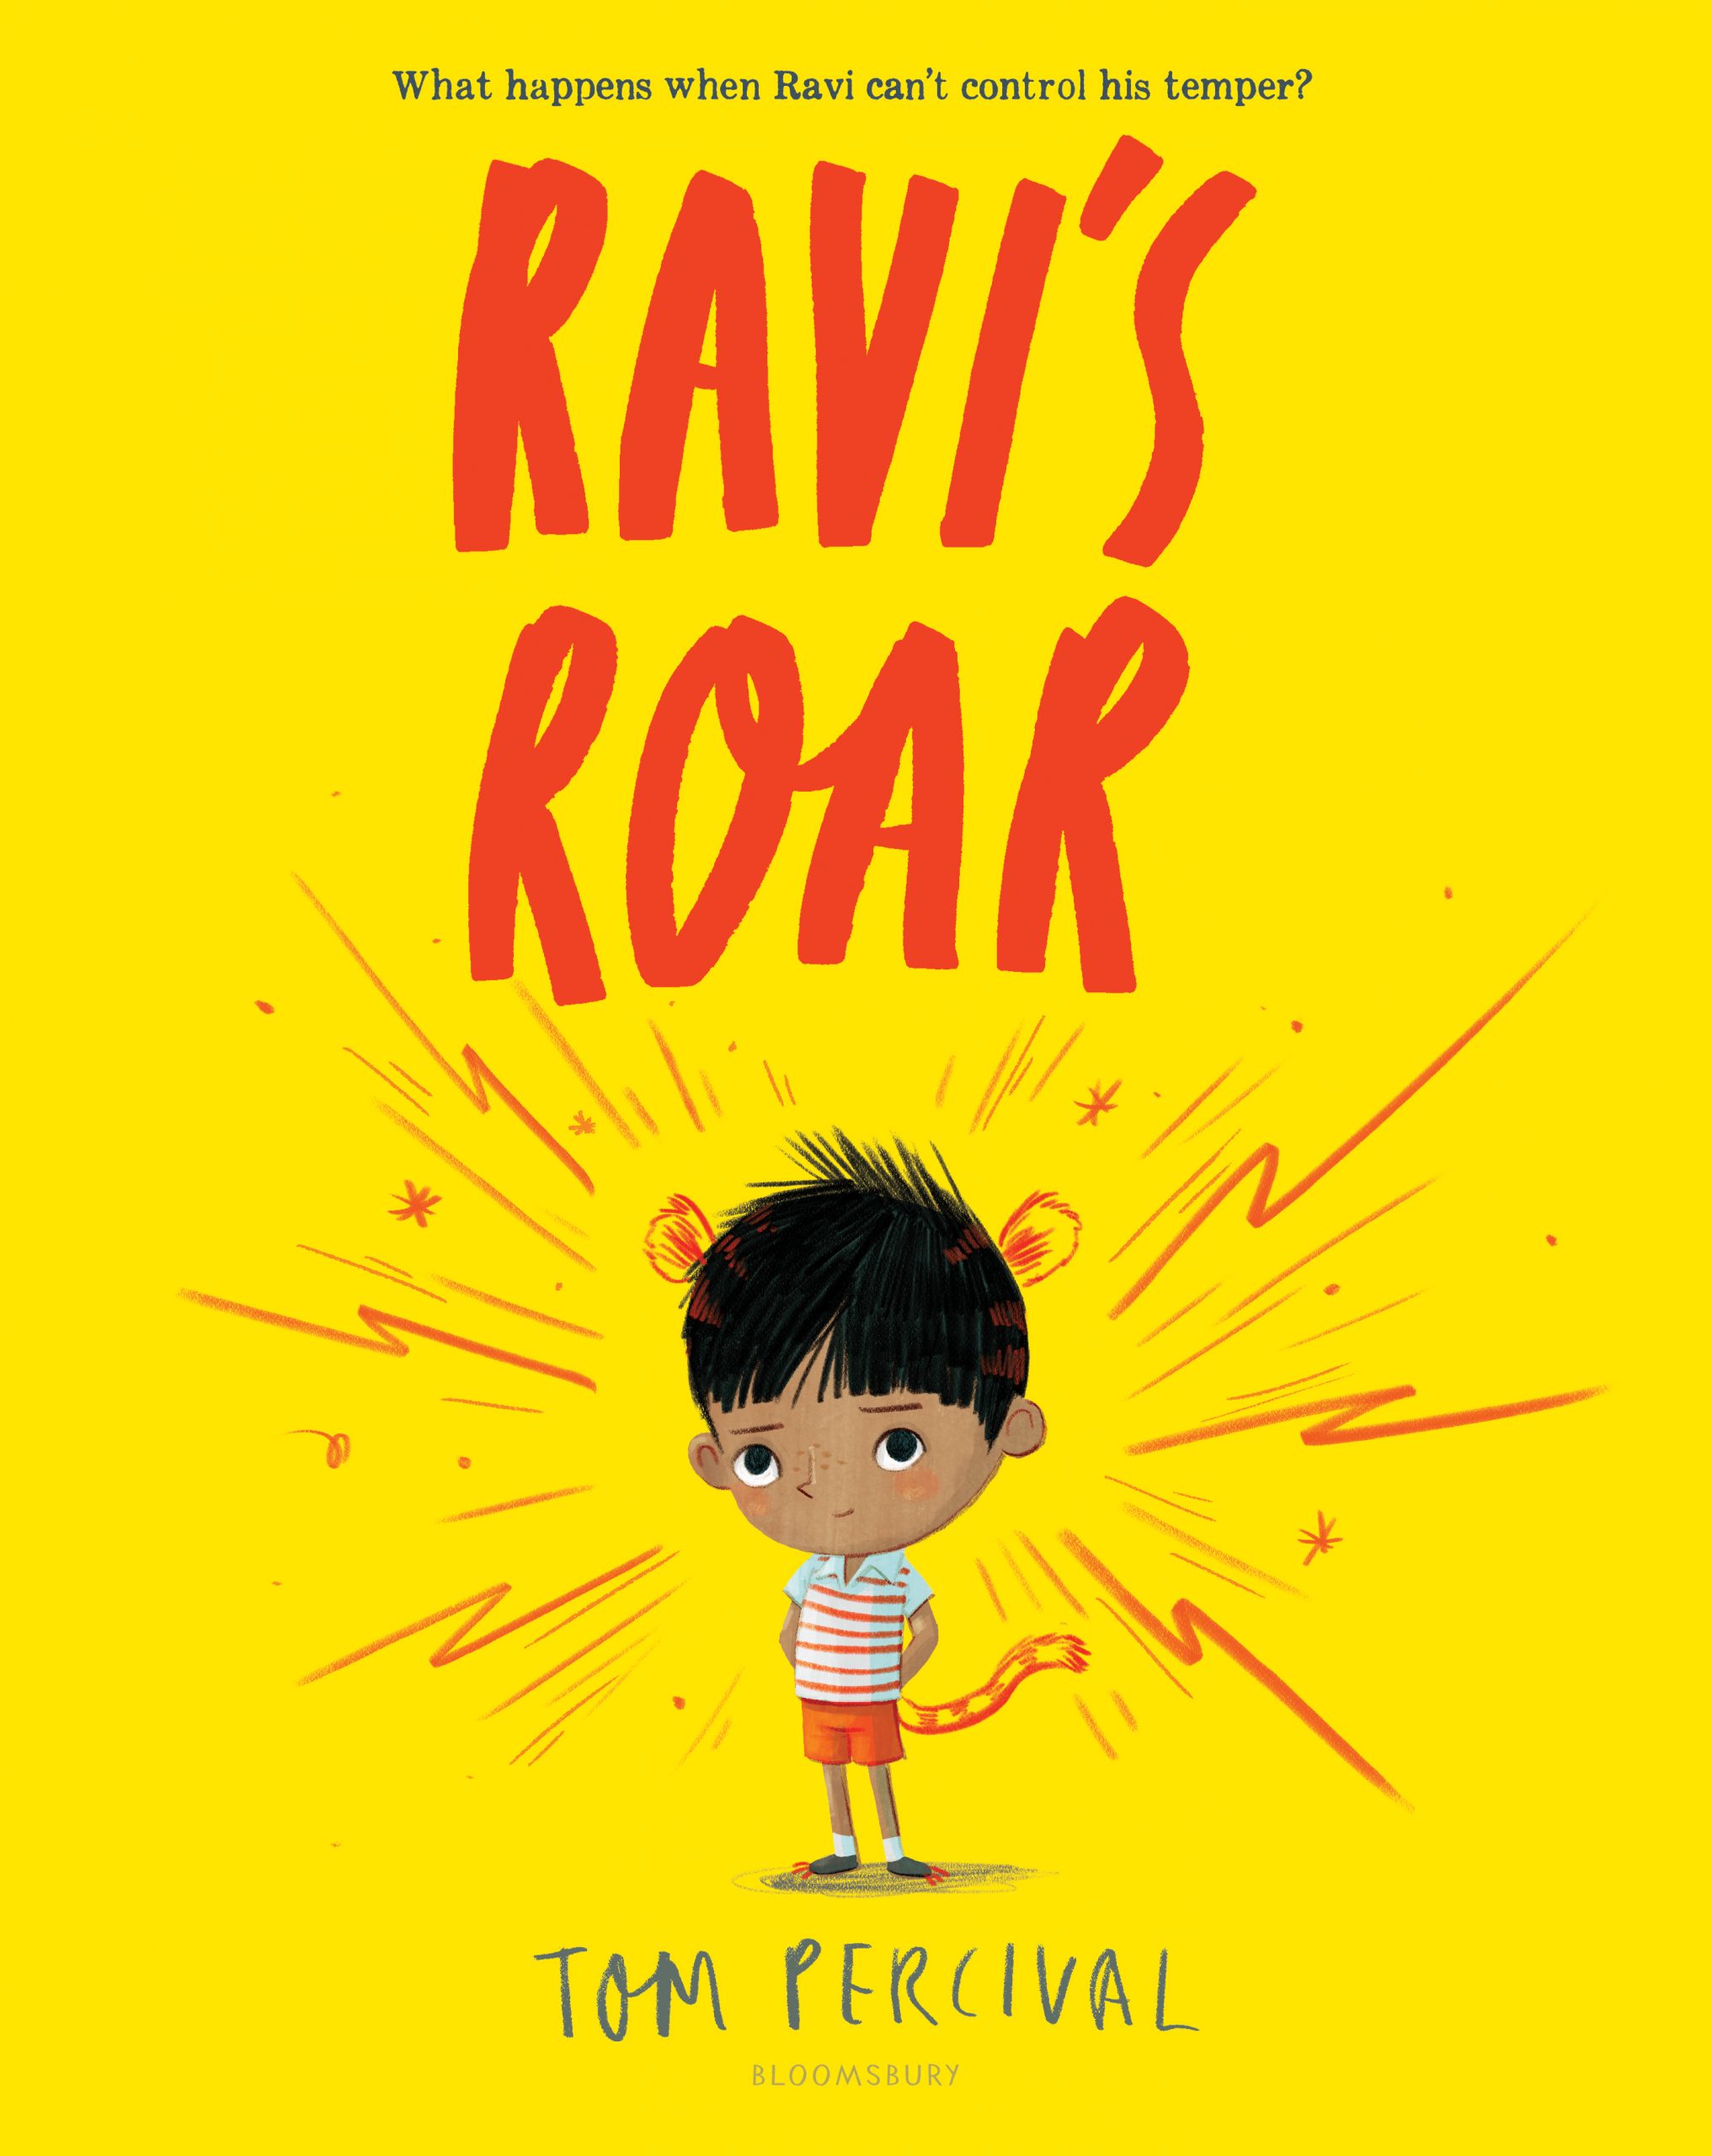 Ravi’s Roar by Tom Percival